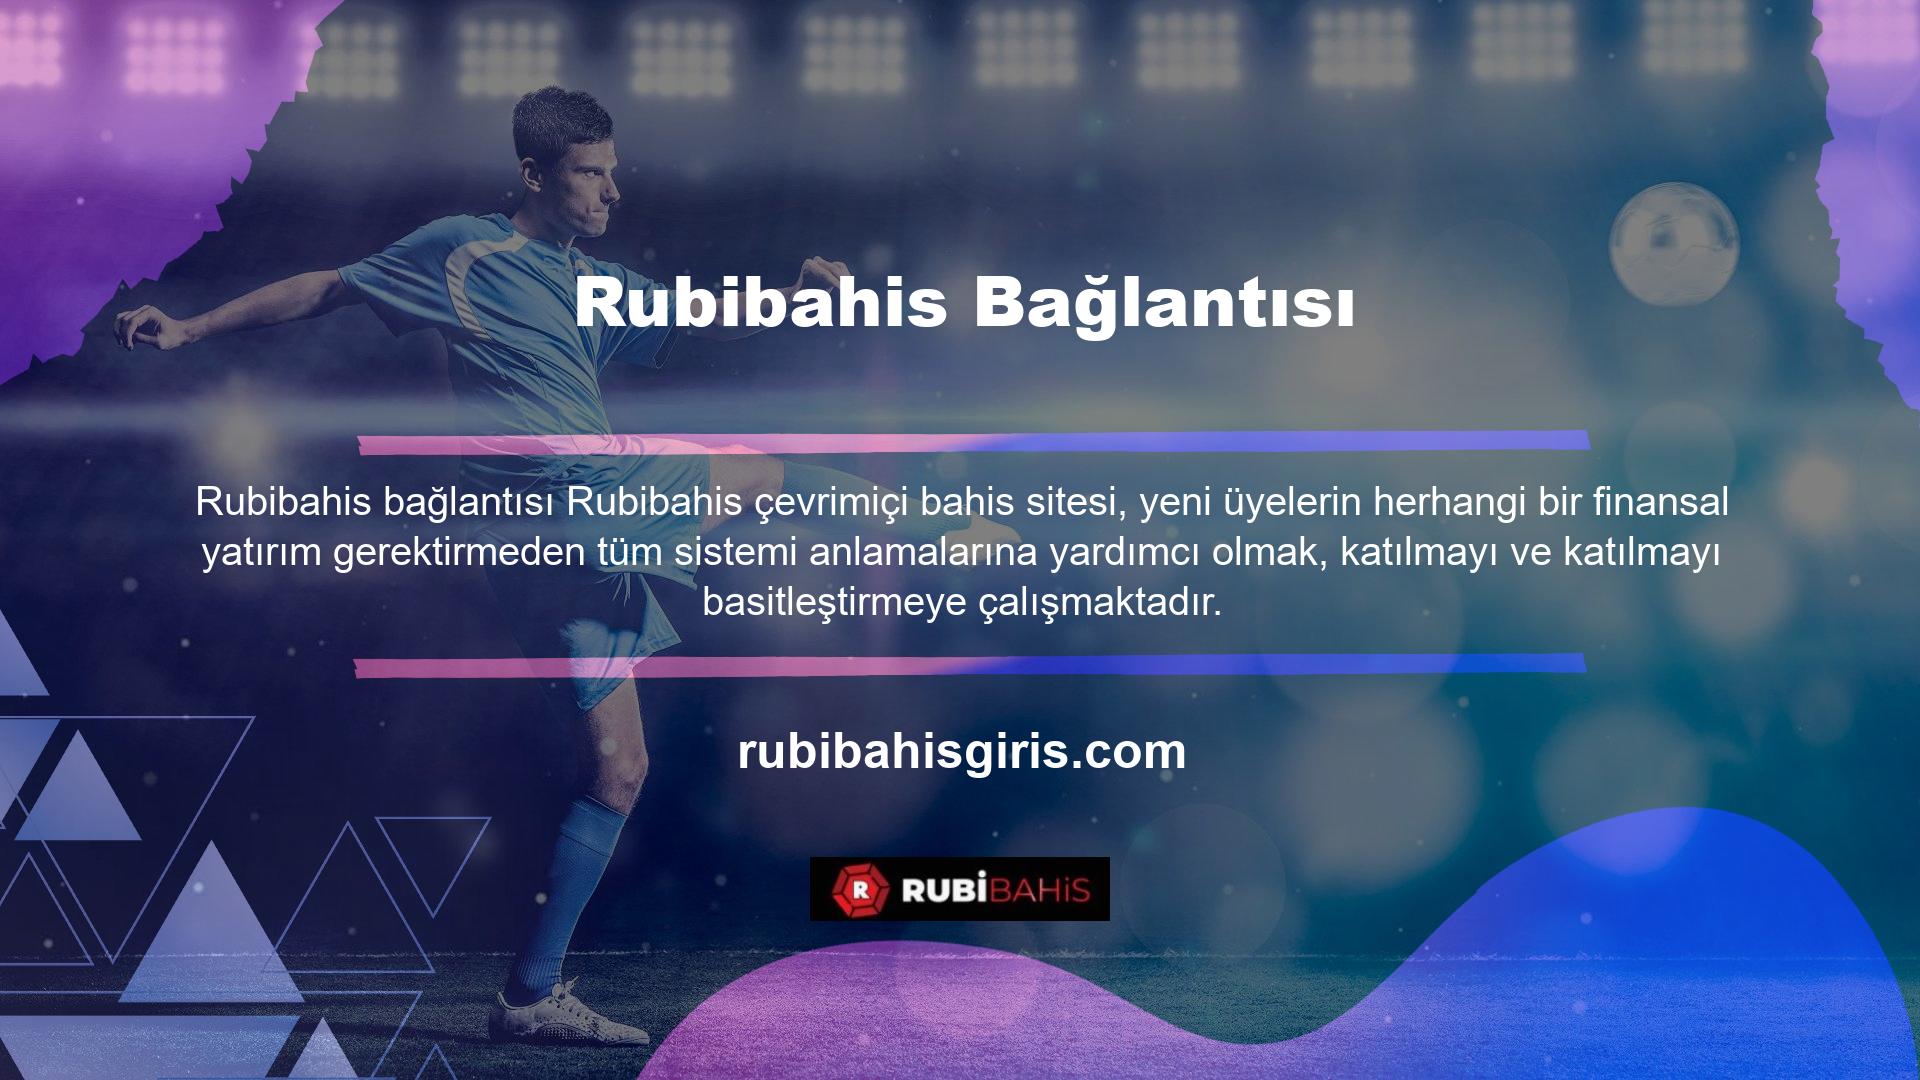 Rubibahis sitesi futbol bahisleri için en etkili platform olup, canlı maçlar, gelecek bölümler ve spor bahisleri için kapsamlı bir karşılaştırma bölümü gibi çok çeşitli özellikler sunmaktadır